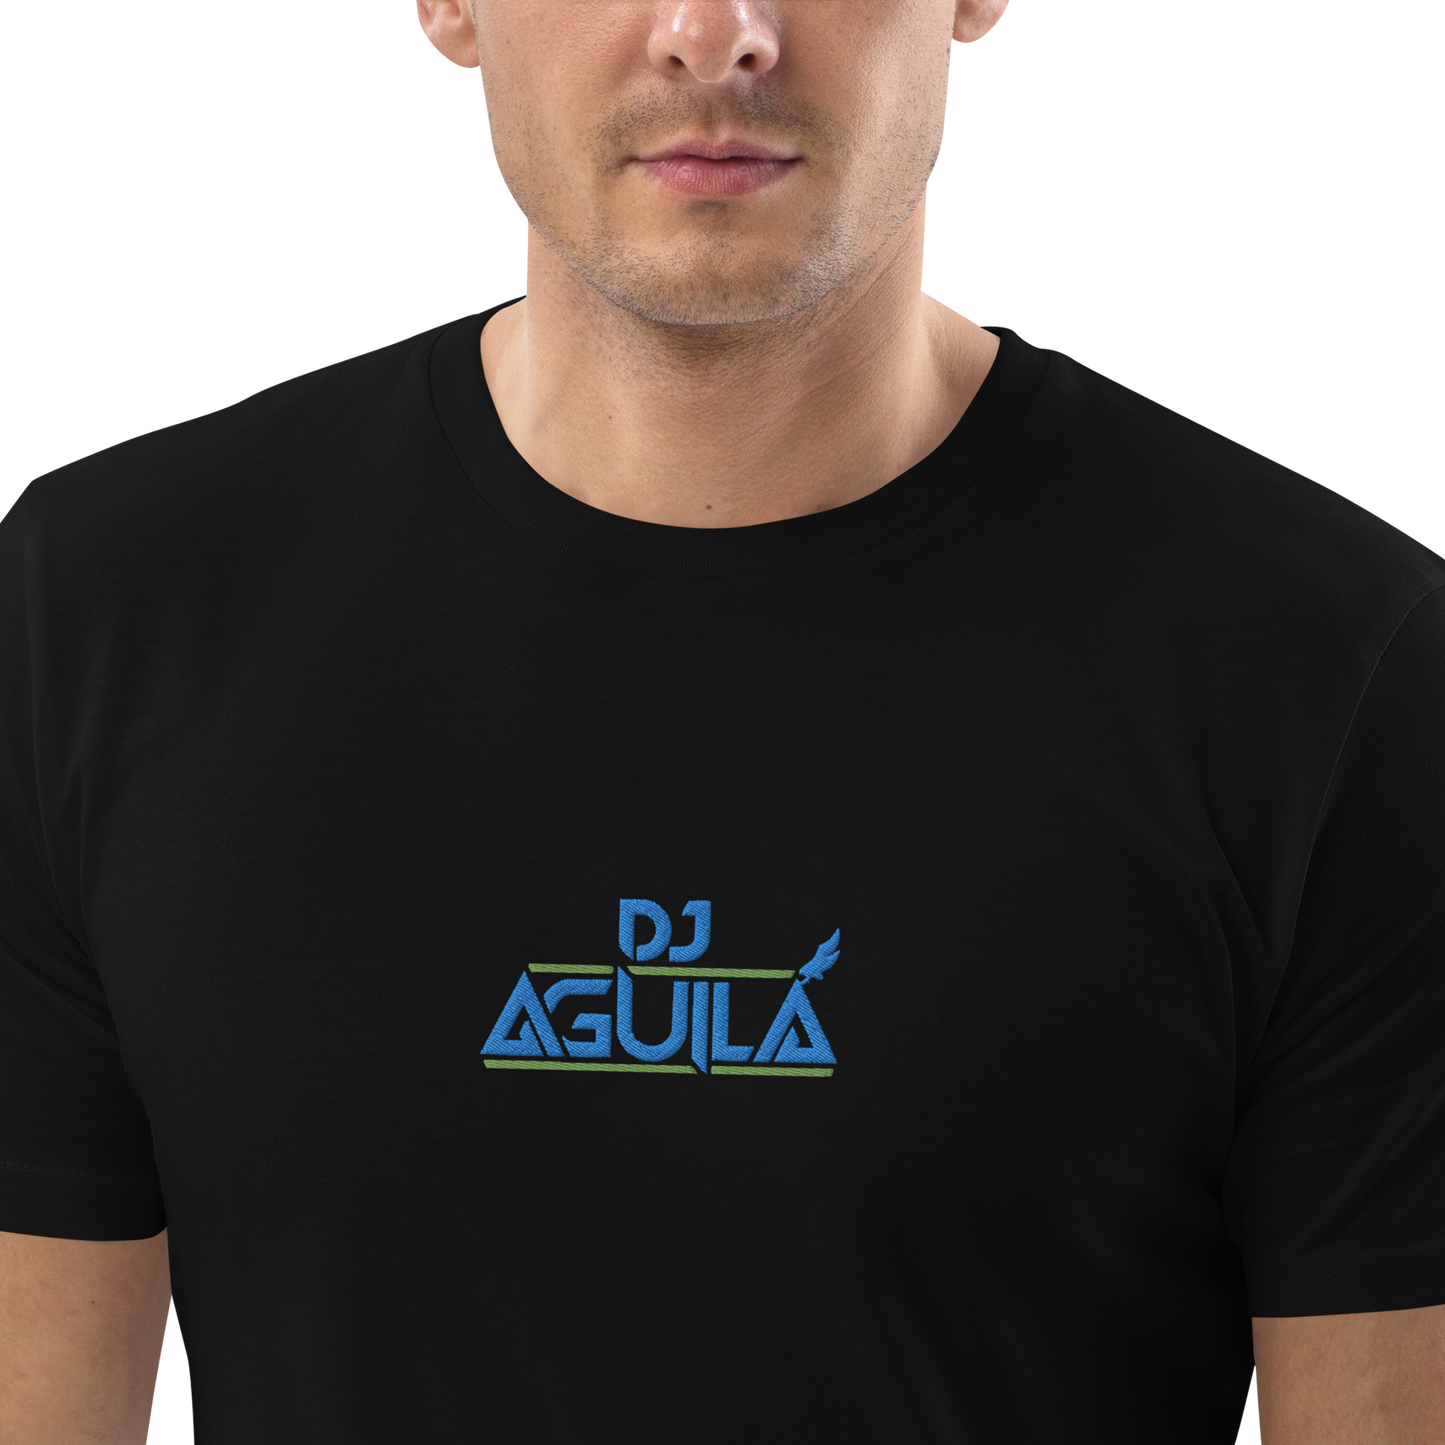 DJ AGUILA -Camiseta de algodón orgánico- Negra